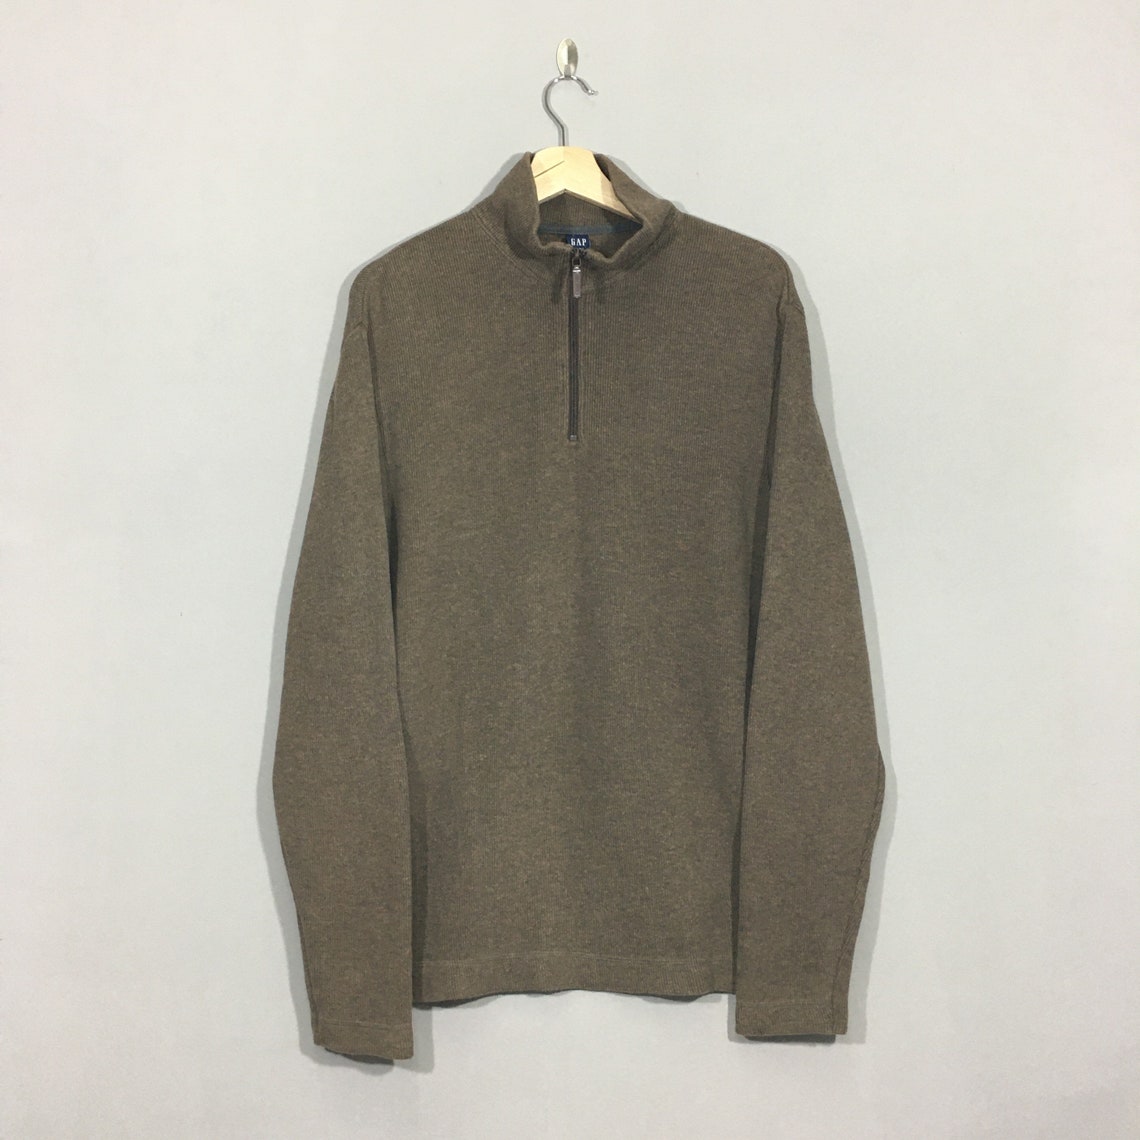 Vintage Gap Sweater Medium 90s Gap Pullover Jumper Streetwear | Etsy